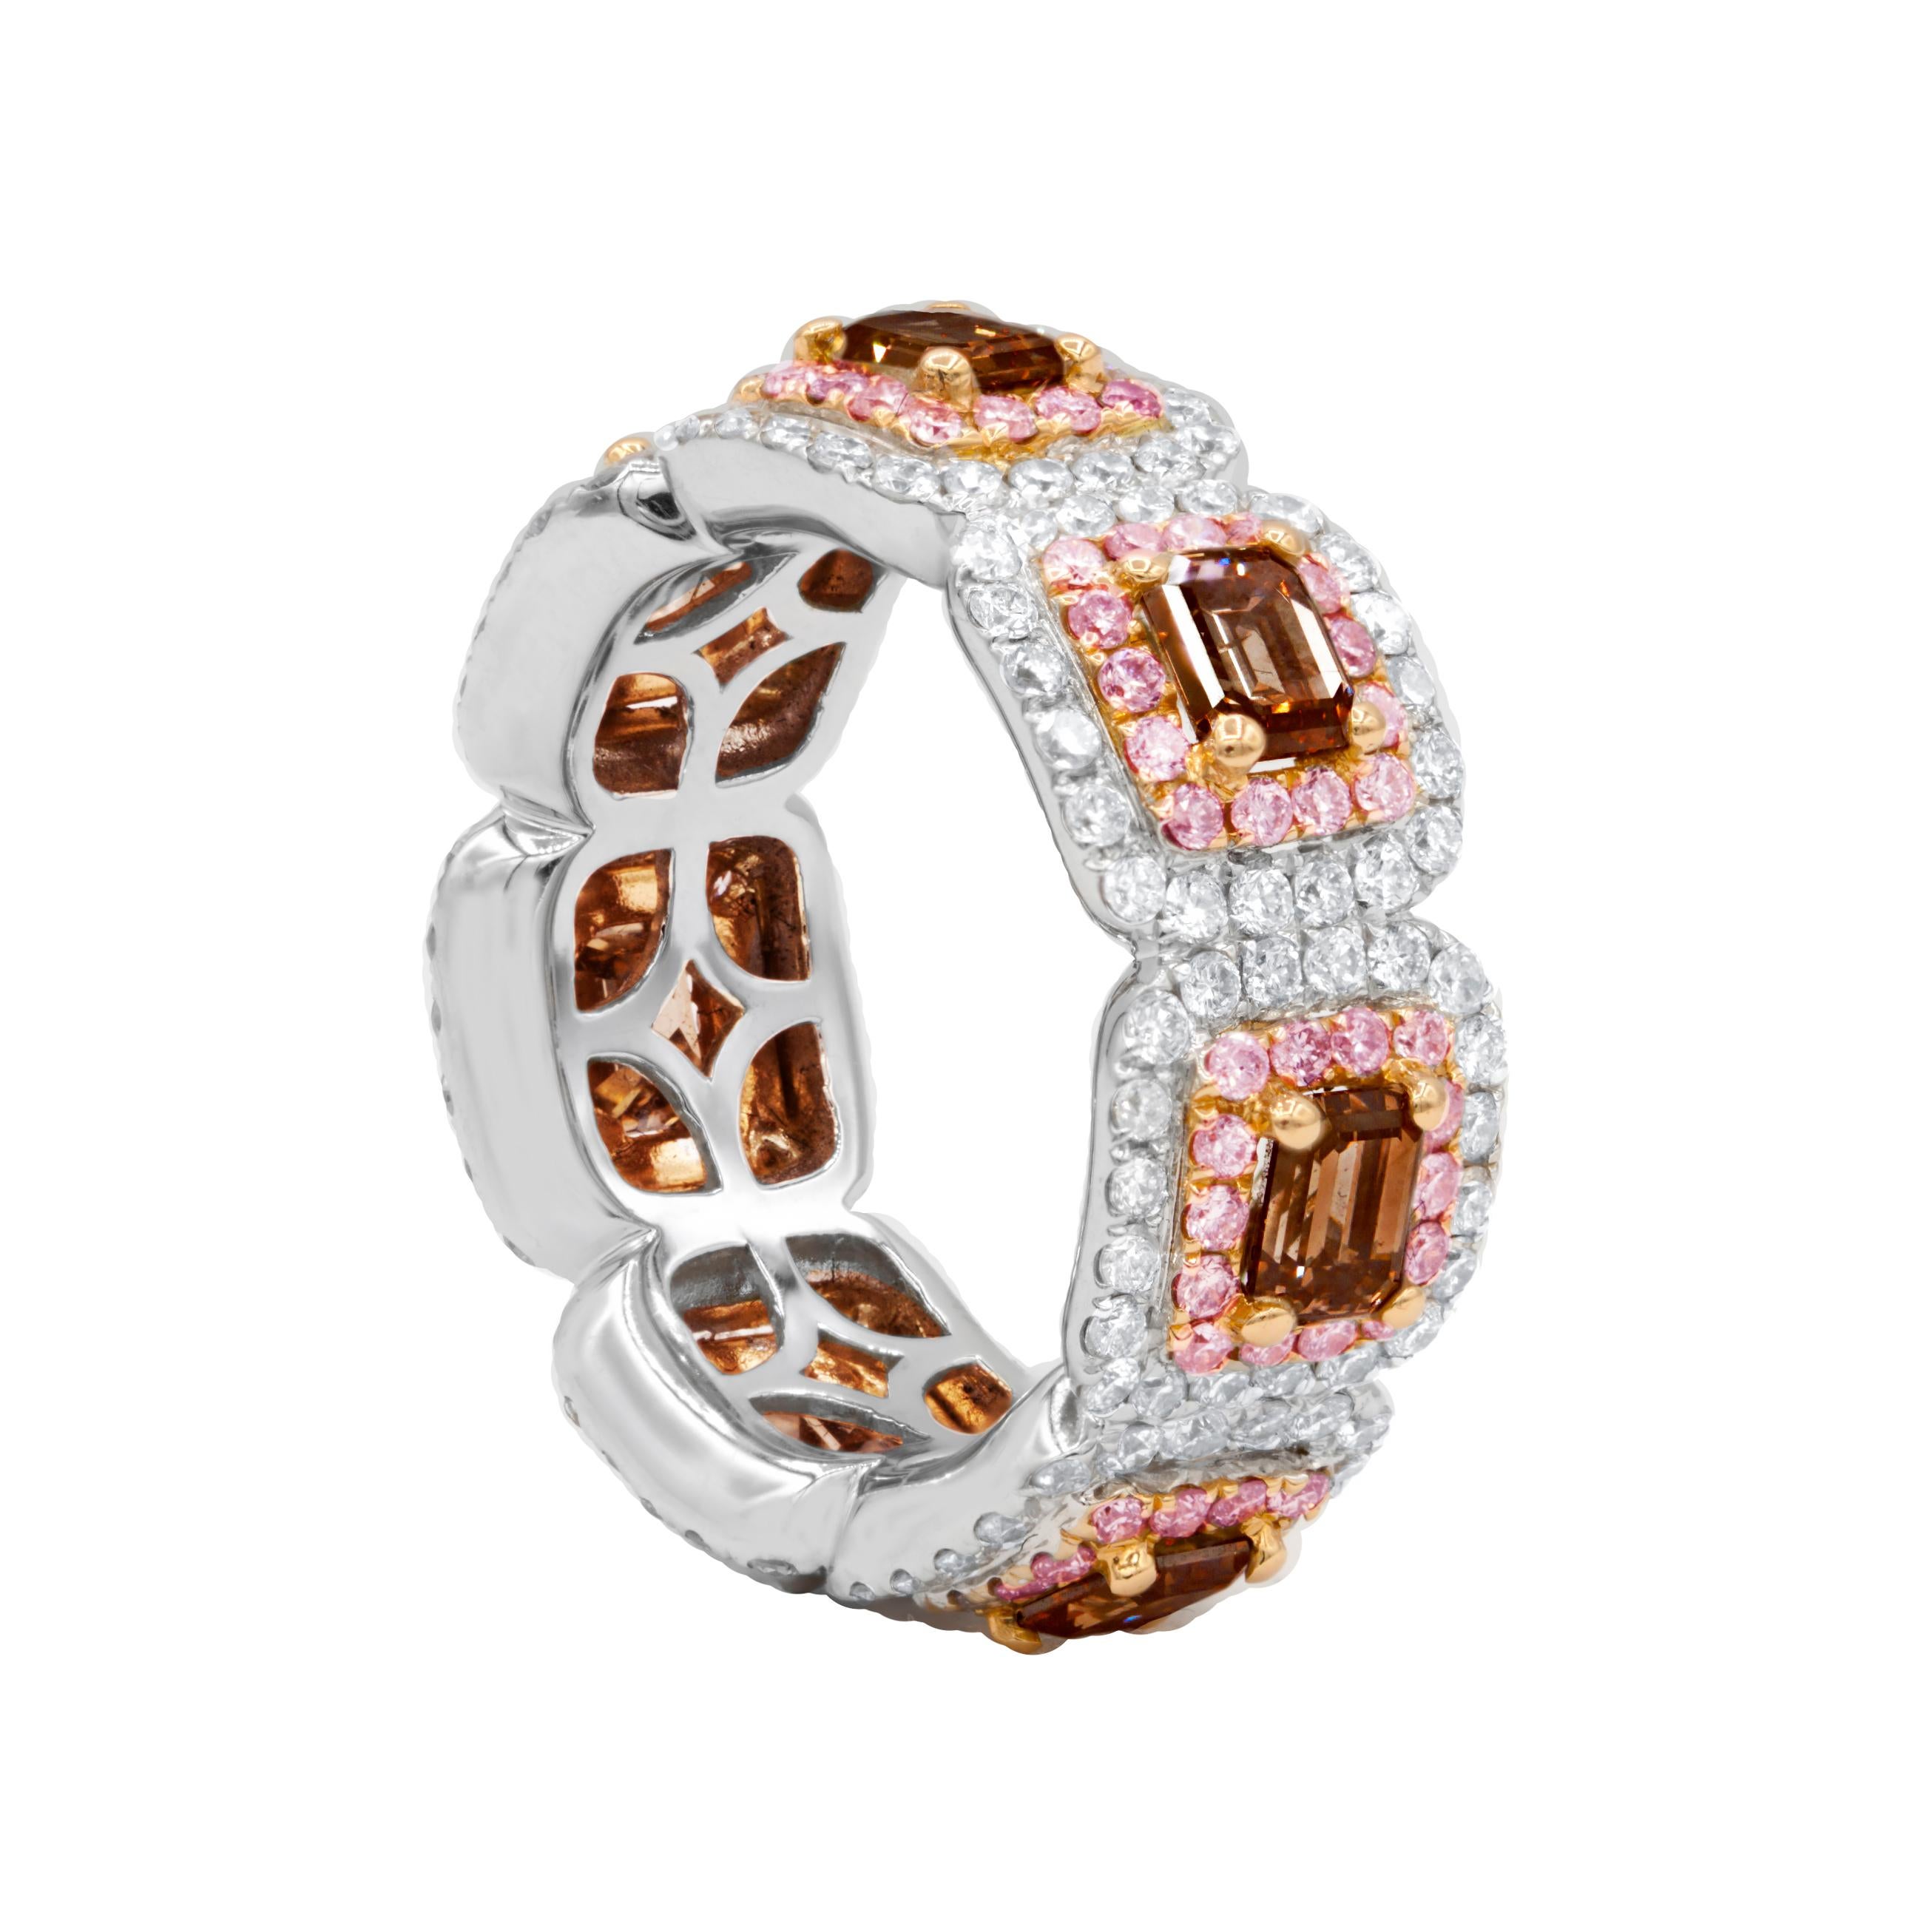 Bracelet d'éternité en or blanc et rose 18 carats contenant 4,39 cts tw de diamants et 3,50 cts de diamants bruns.  (7 diamants bruns de taille émeraude).
A&M est un fournisseur de premier plan de bijoux fins de qualité supérieure depuis plus de 35